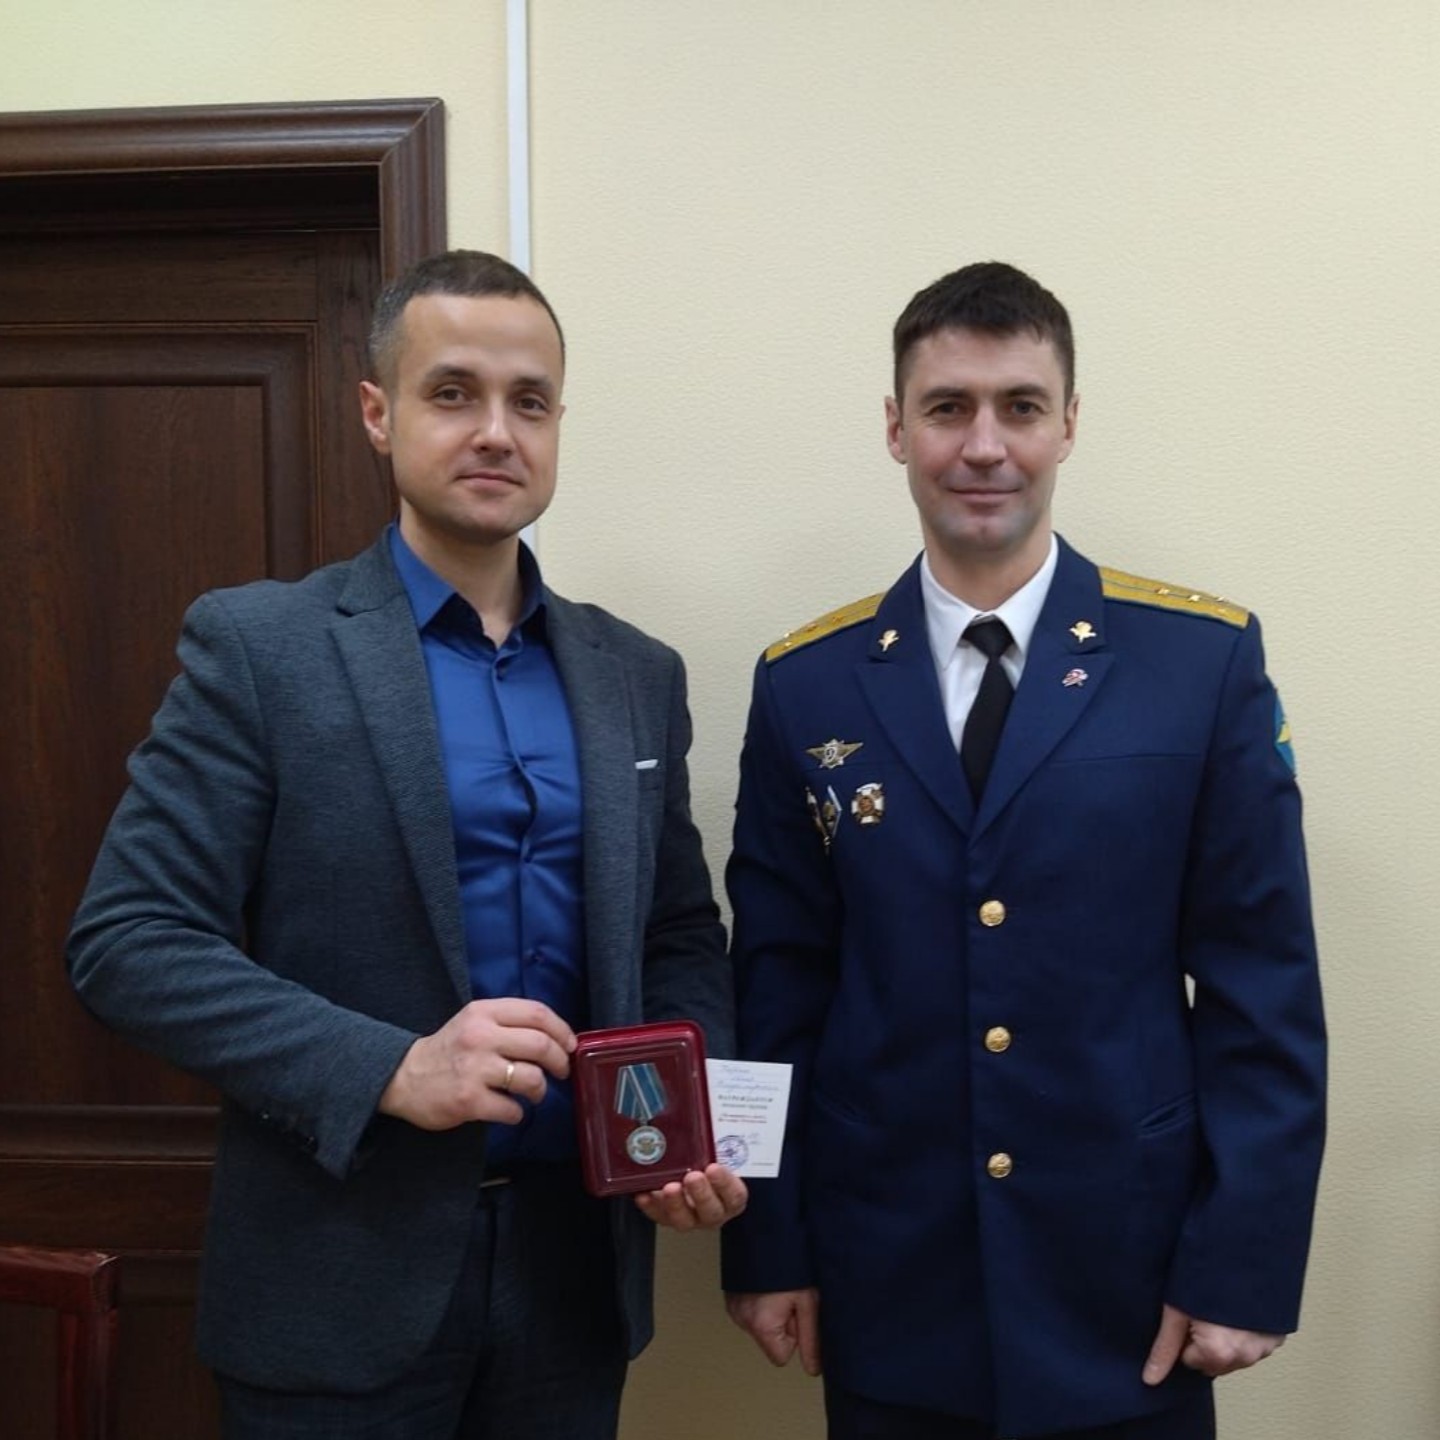 Директор Уемской школы Илья Тюрин награжден медалью ордена «За верность долгу. Во славу Отечества»